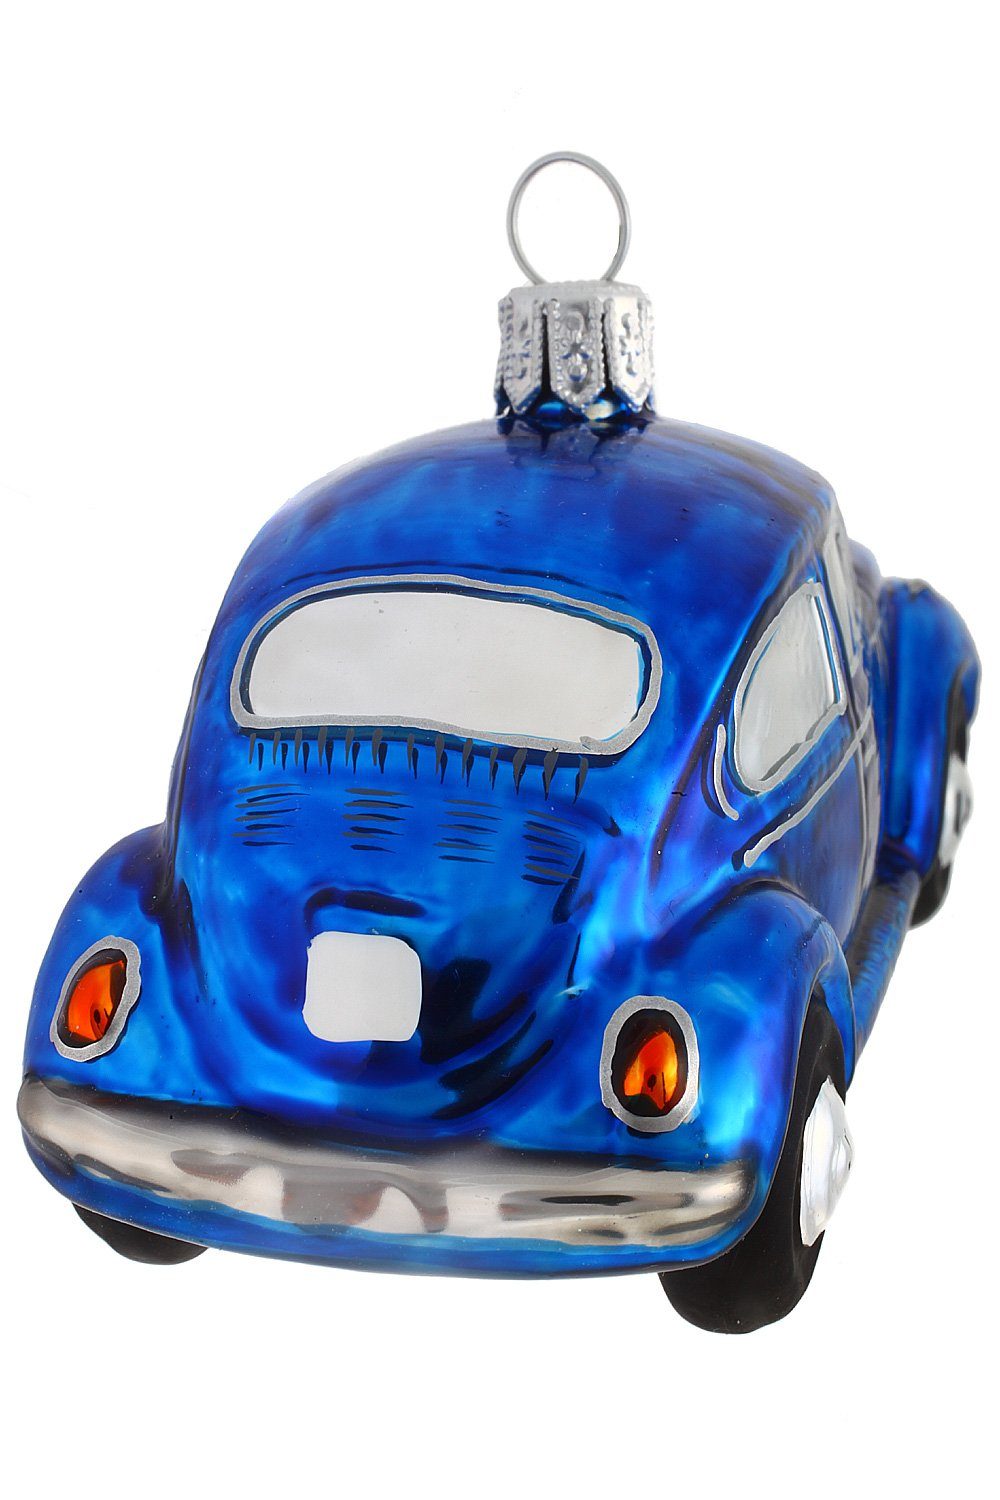 Weihnachtskontor - Dekohänger blau, handdekoriert mundgeblasen Käfer VW - Christbaumschmuck Hamburger